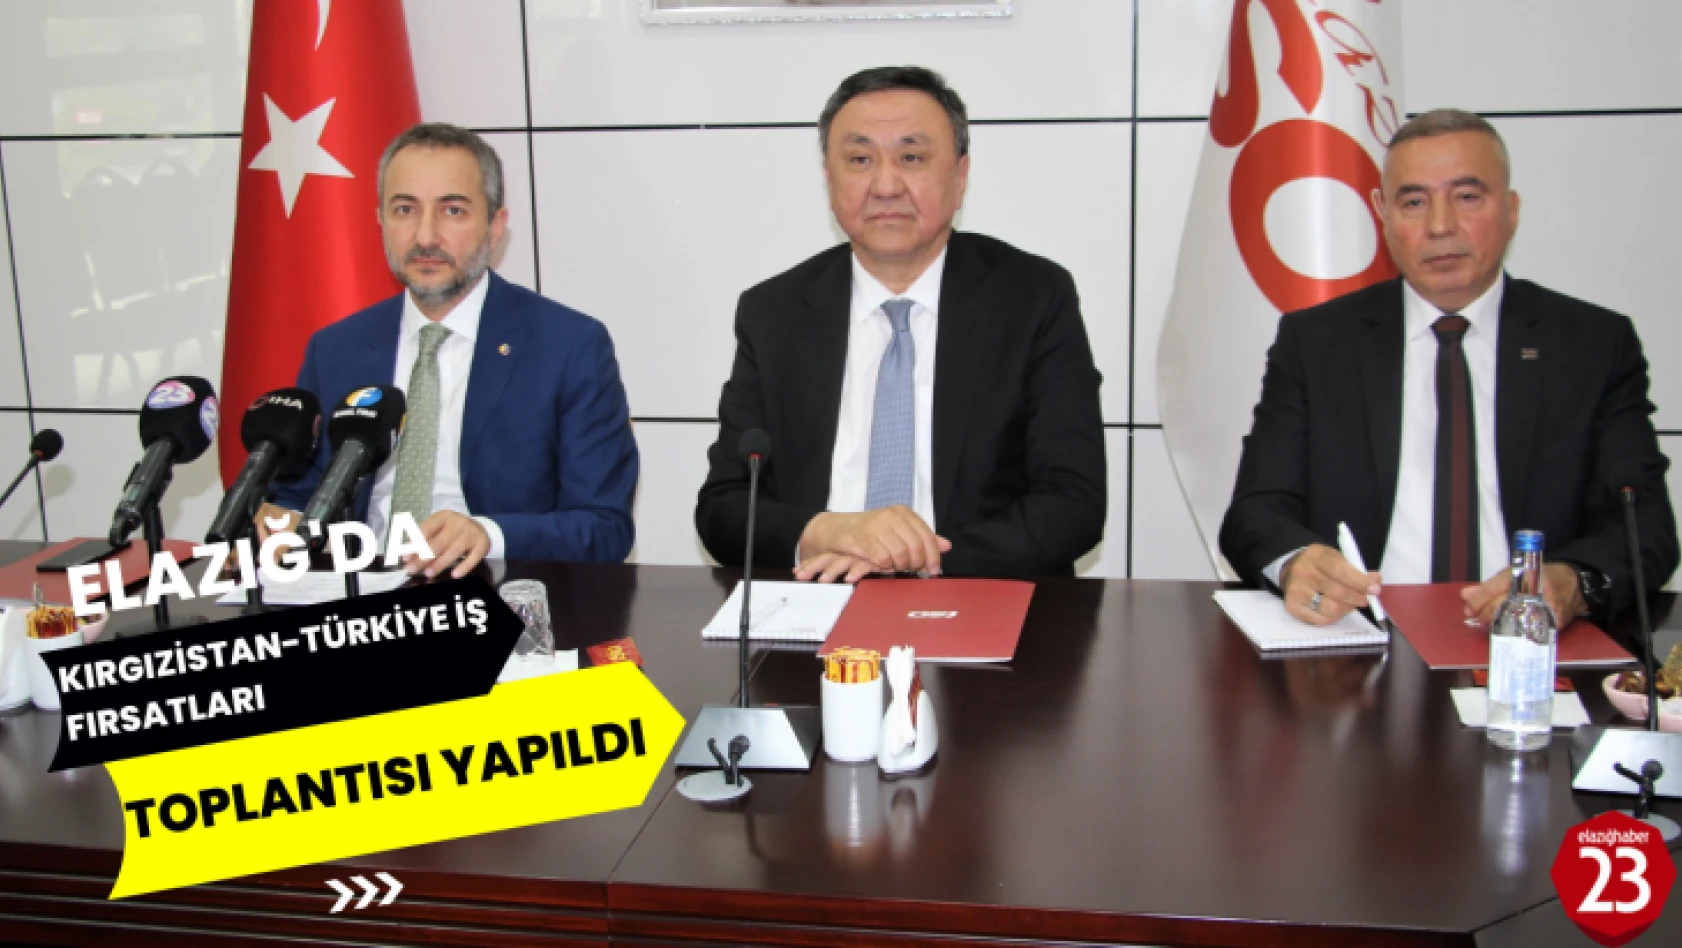 Elazığ'da, Kırgızistan Türkiye İş Fırsatları Toplantısı Yapıldı